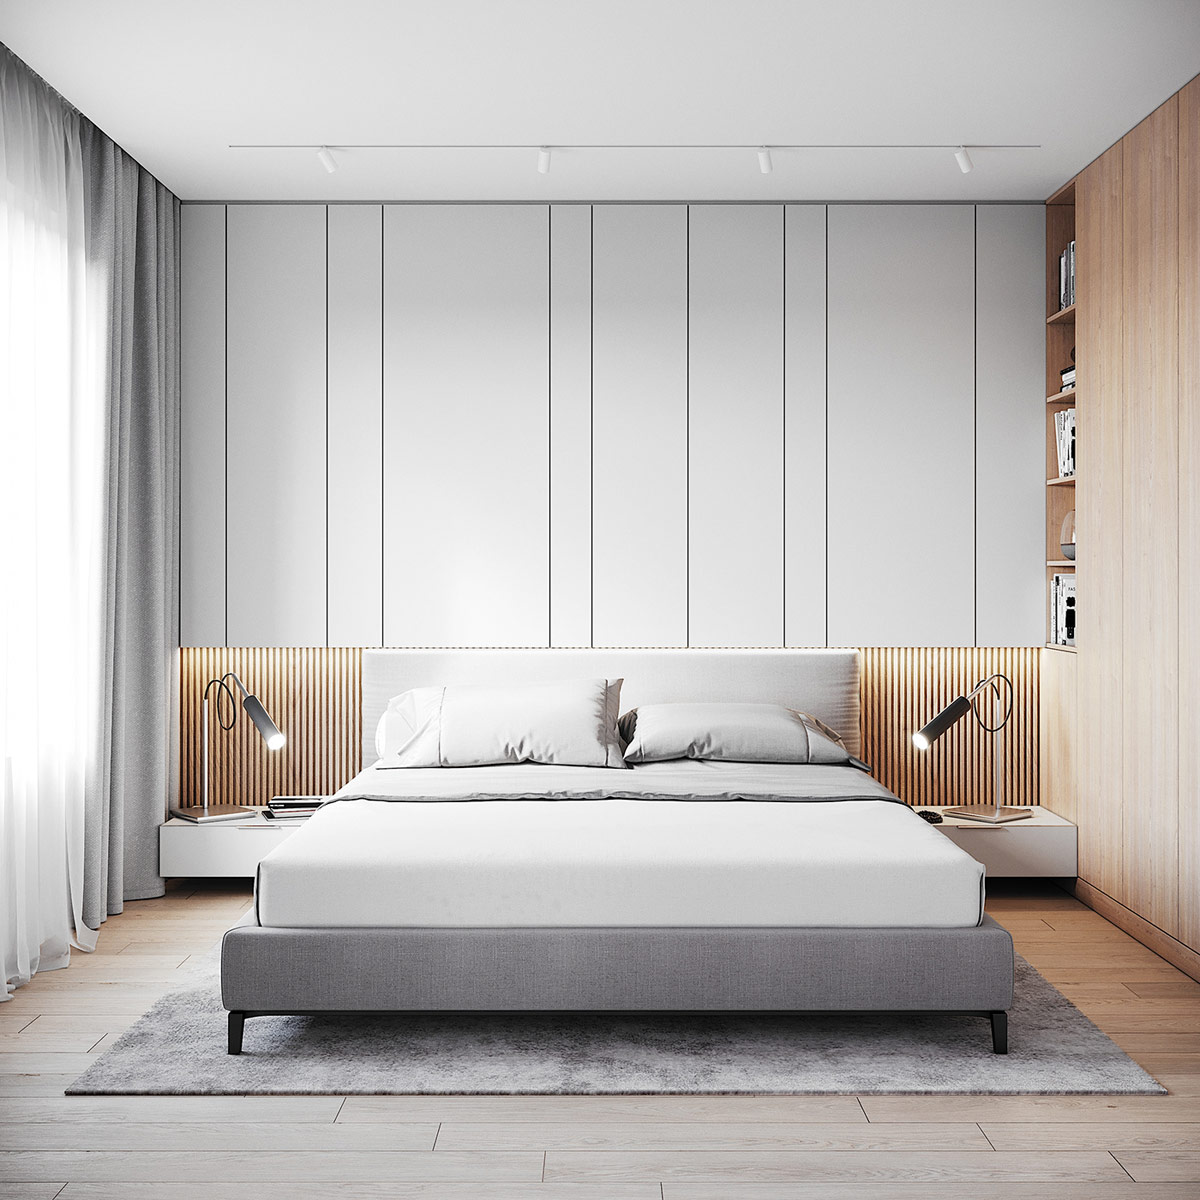 Di chuyển vào phòng ngủ, sự mở rộng của bức tường đầu giường tăng thêm sự thú vị từ việc cắt tấm ốp ở các độ rộng khác nhau.